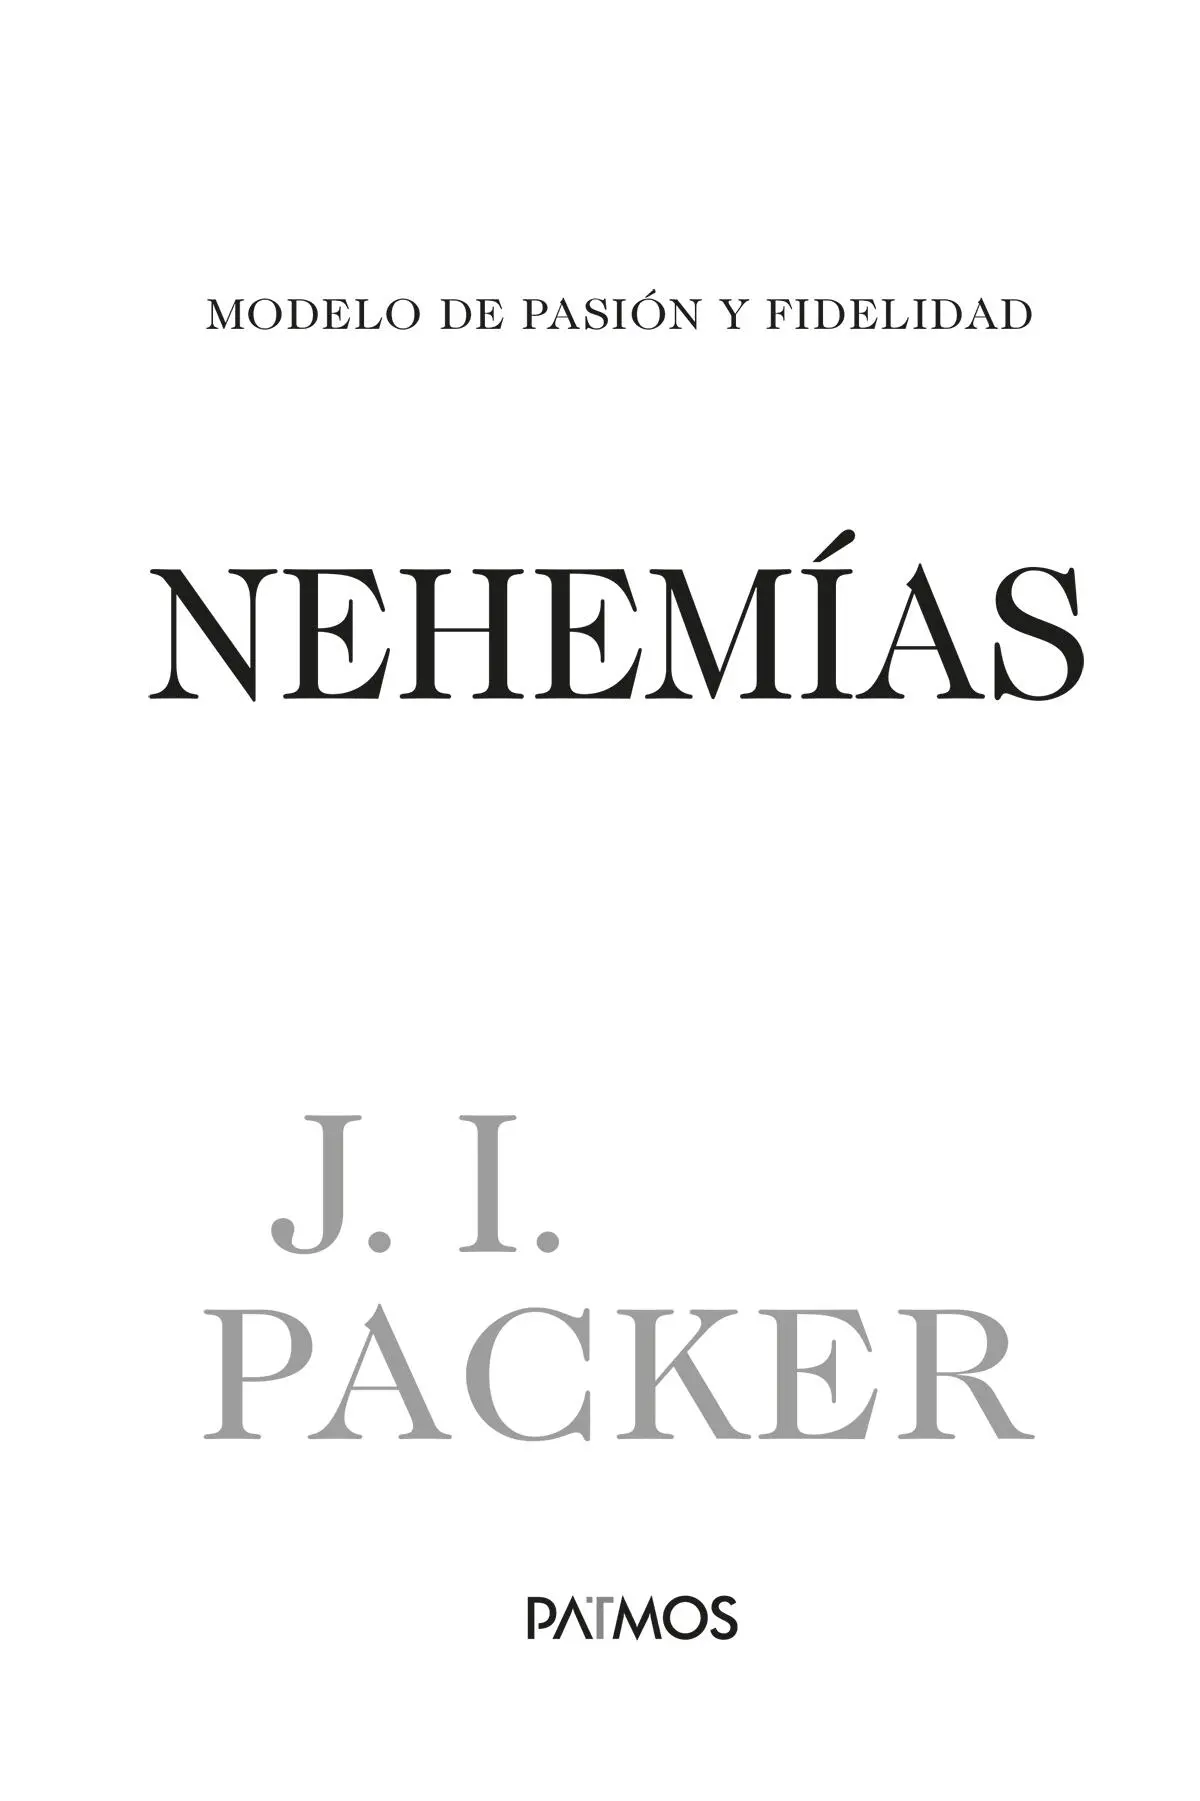 Nehemias Modelo de pasión y fidelidad 2021 por Editorial Patmos Publicado - фото 2